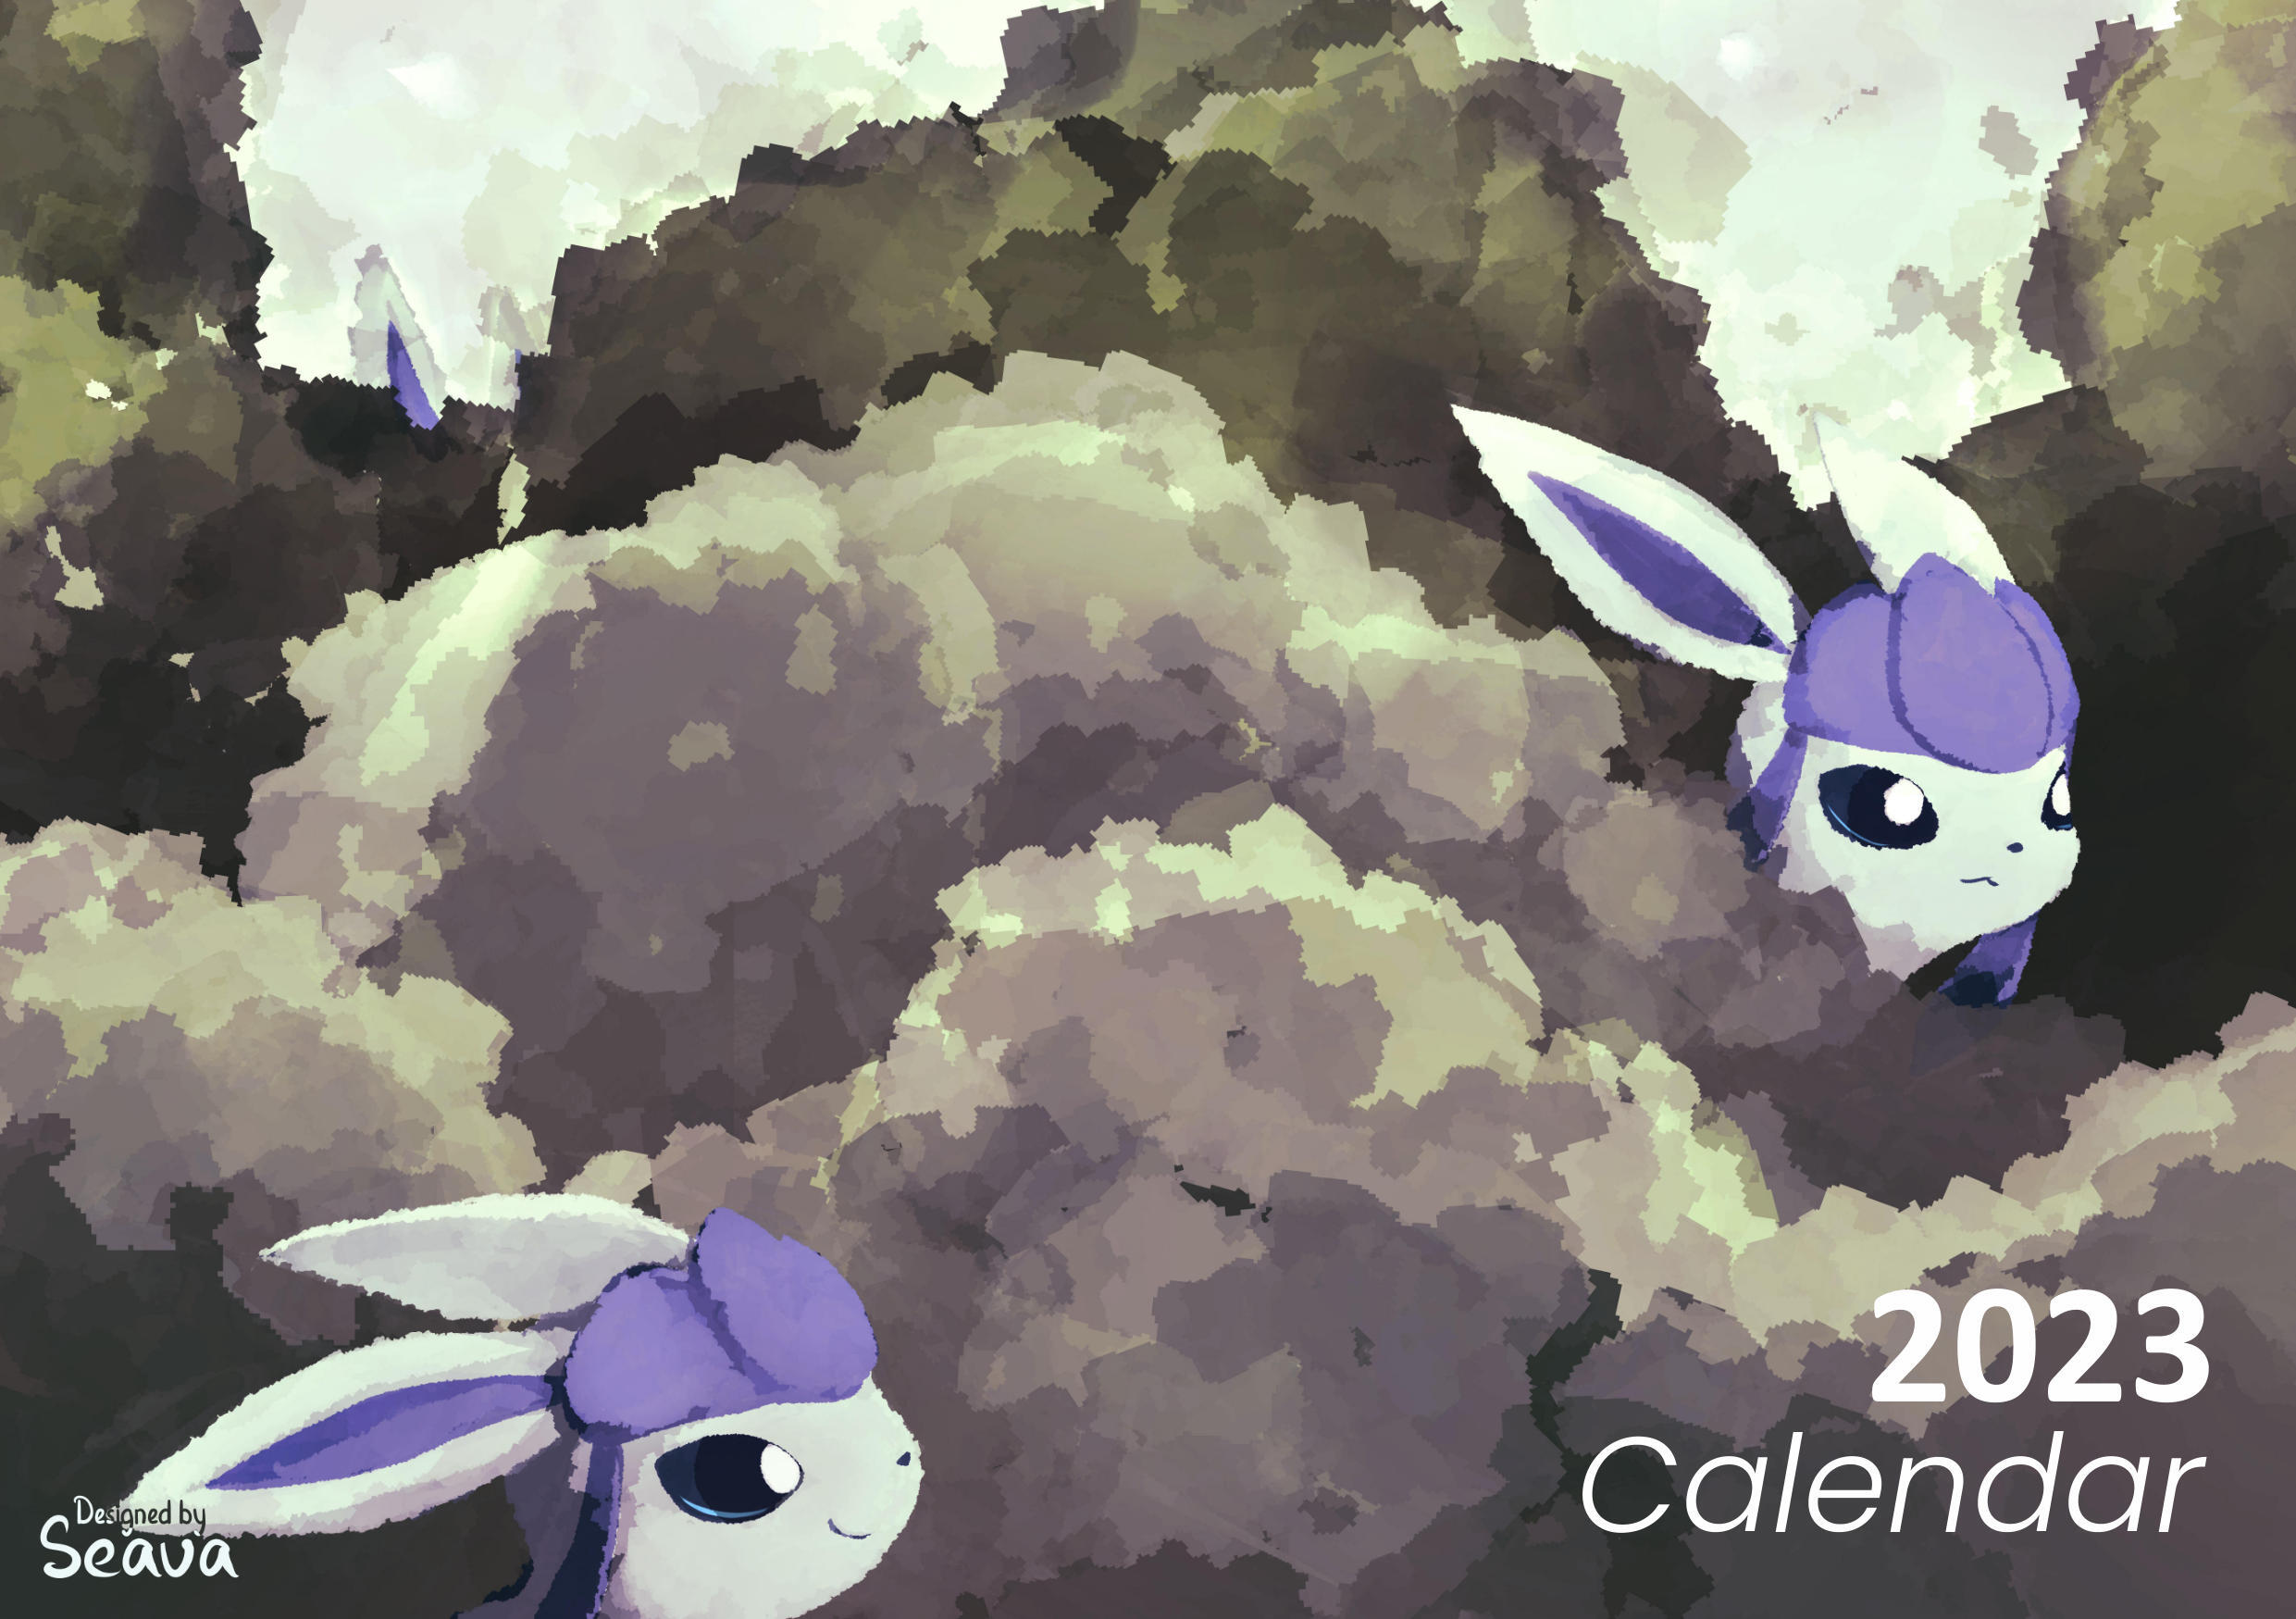 Prepare-se para 2023 com este calendário Pokémon!